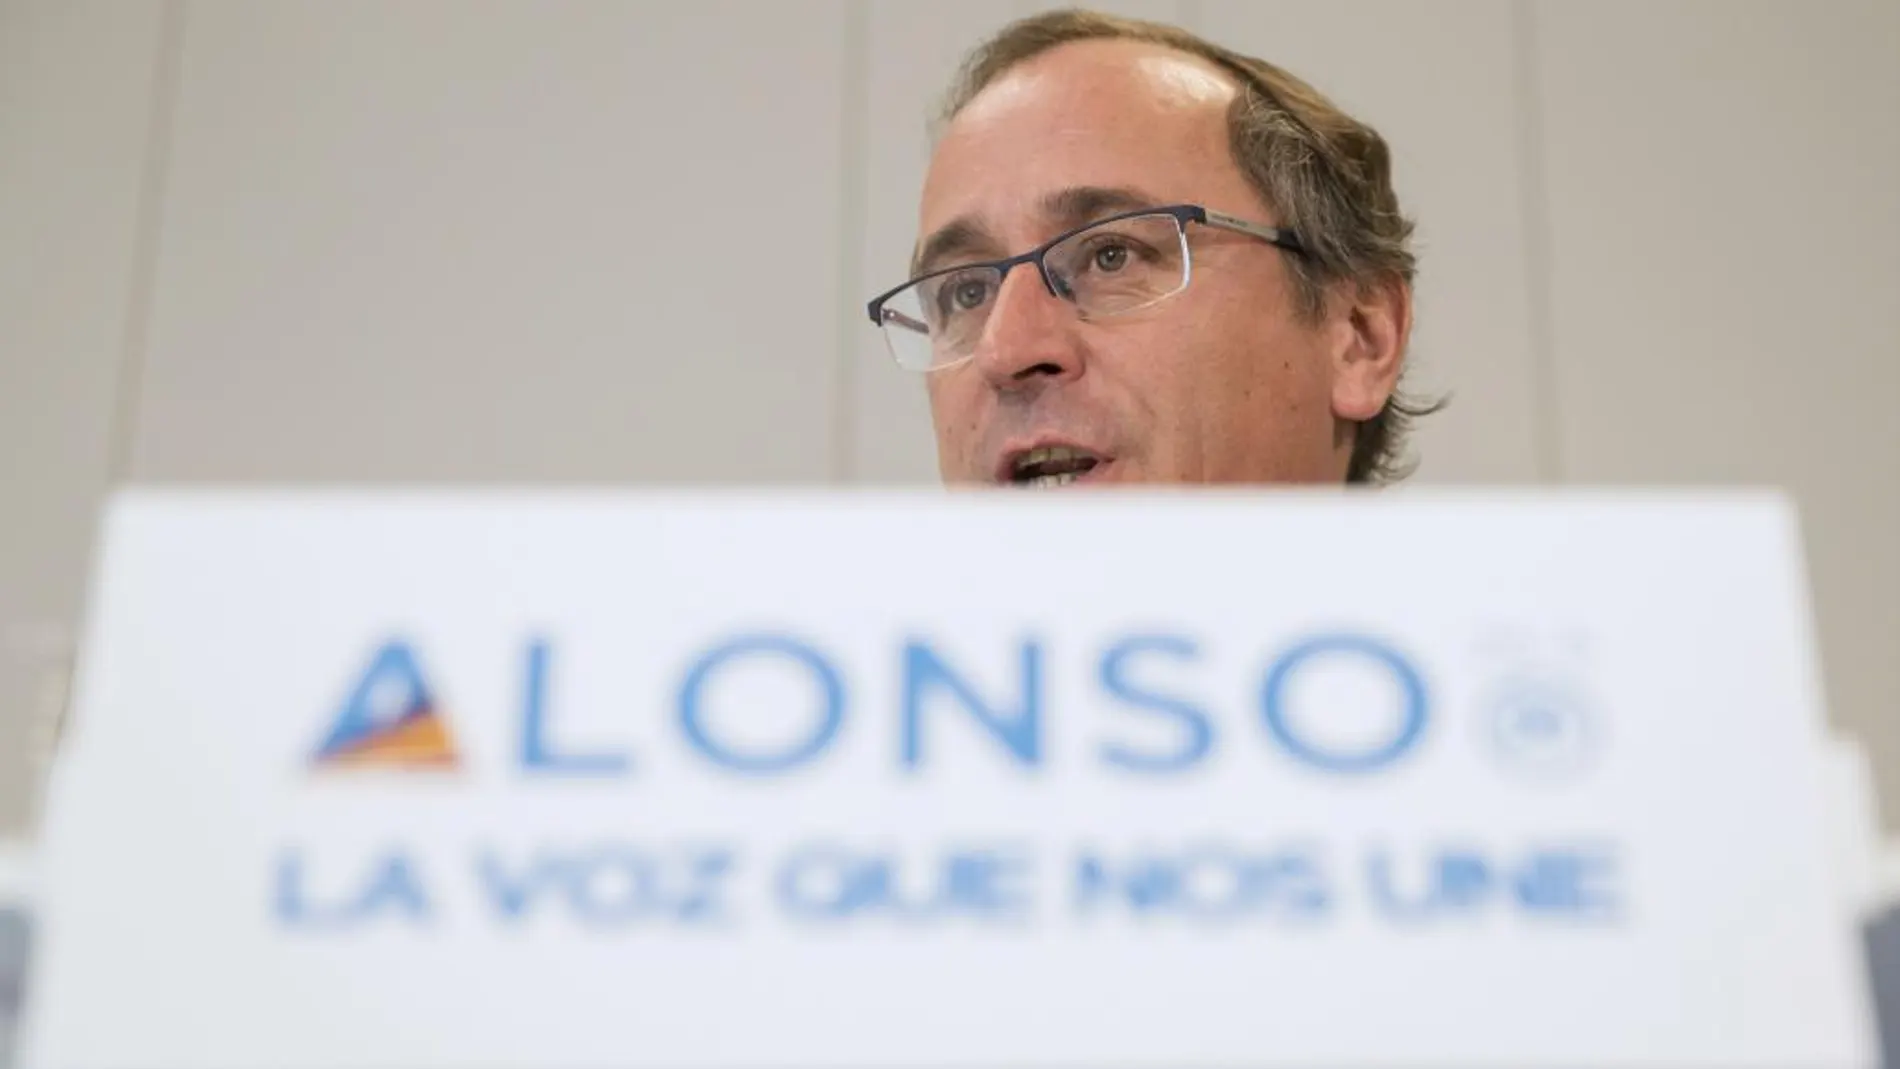 El candidato del PP a lehendakari, Alfonso Alonso, ha participado en un acto de precampaña de las elecciones vascas del 25 de septiembre